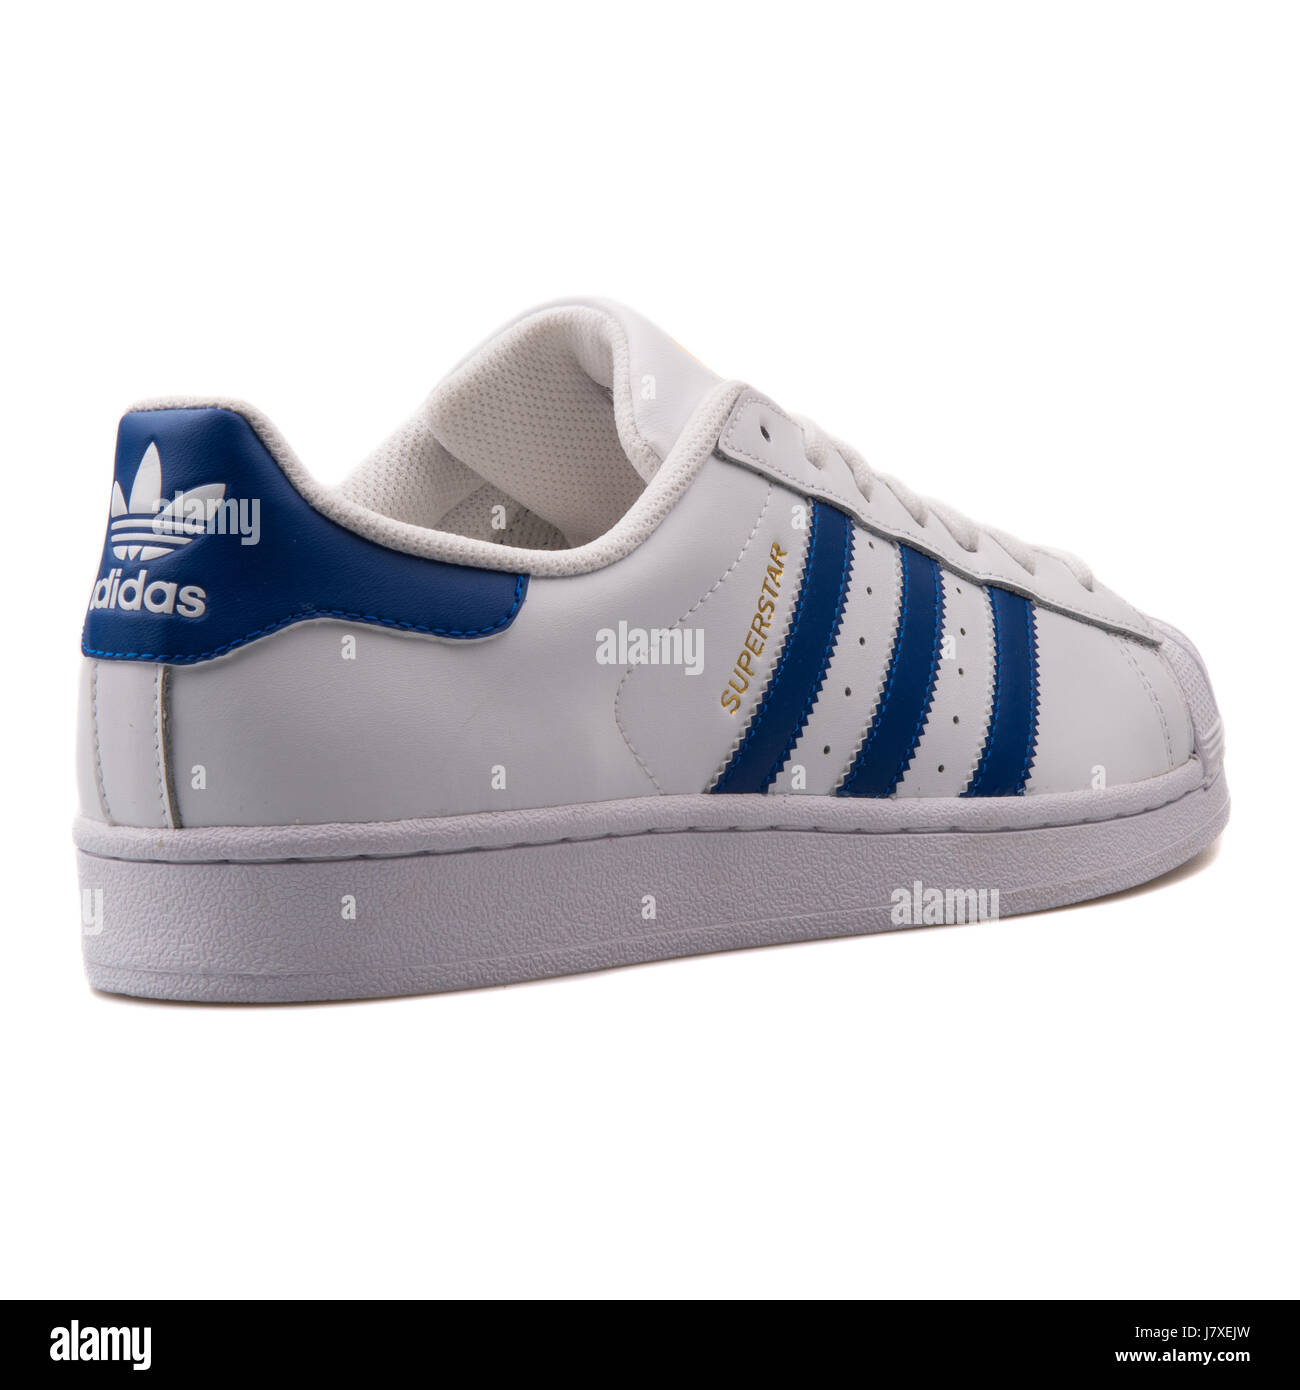 Adidas Superstar Foundation Hombre de cuero blanco con azul Sneakers B27141 Fotografía de stock - Alamy